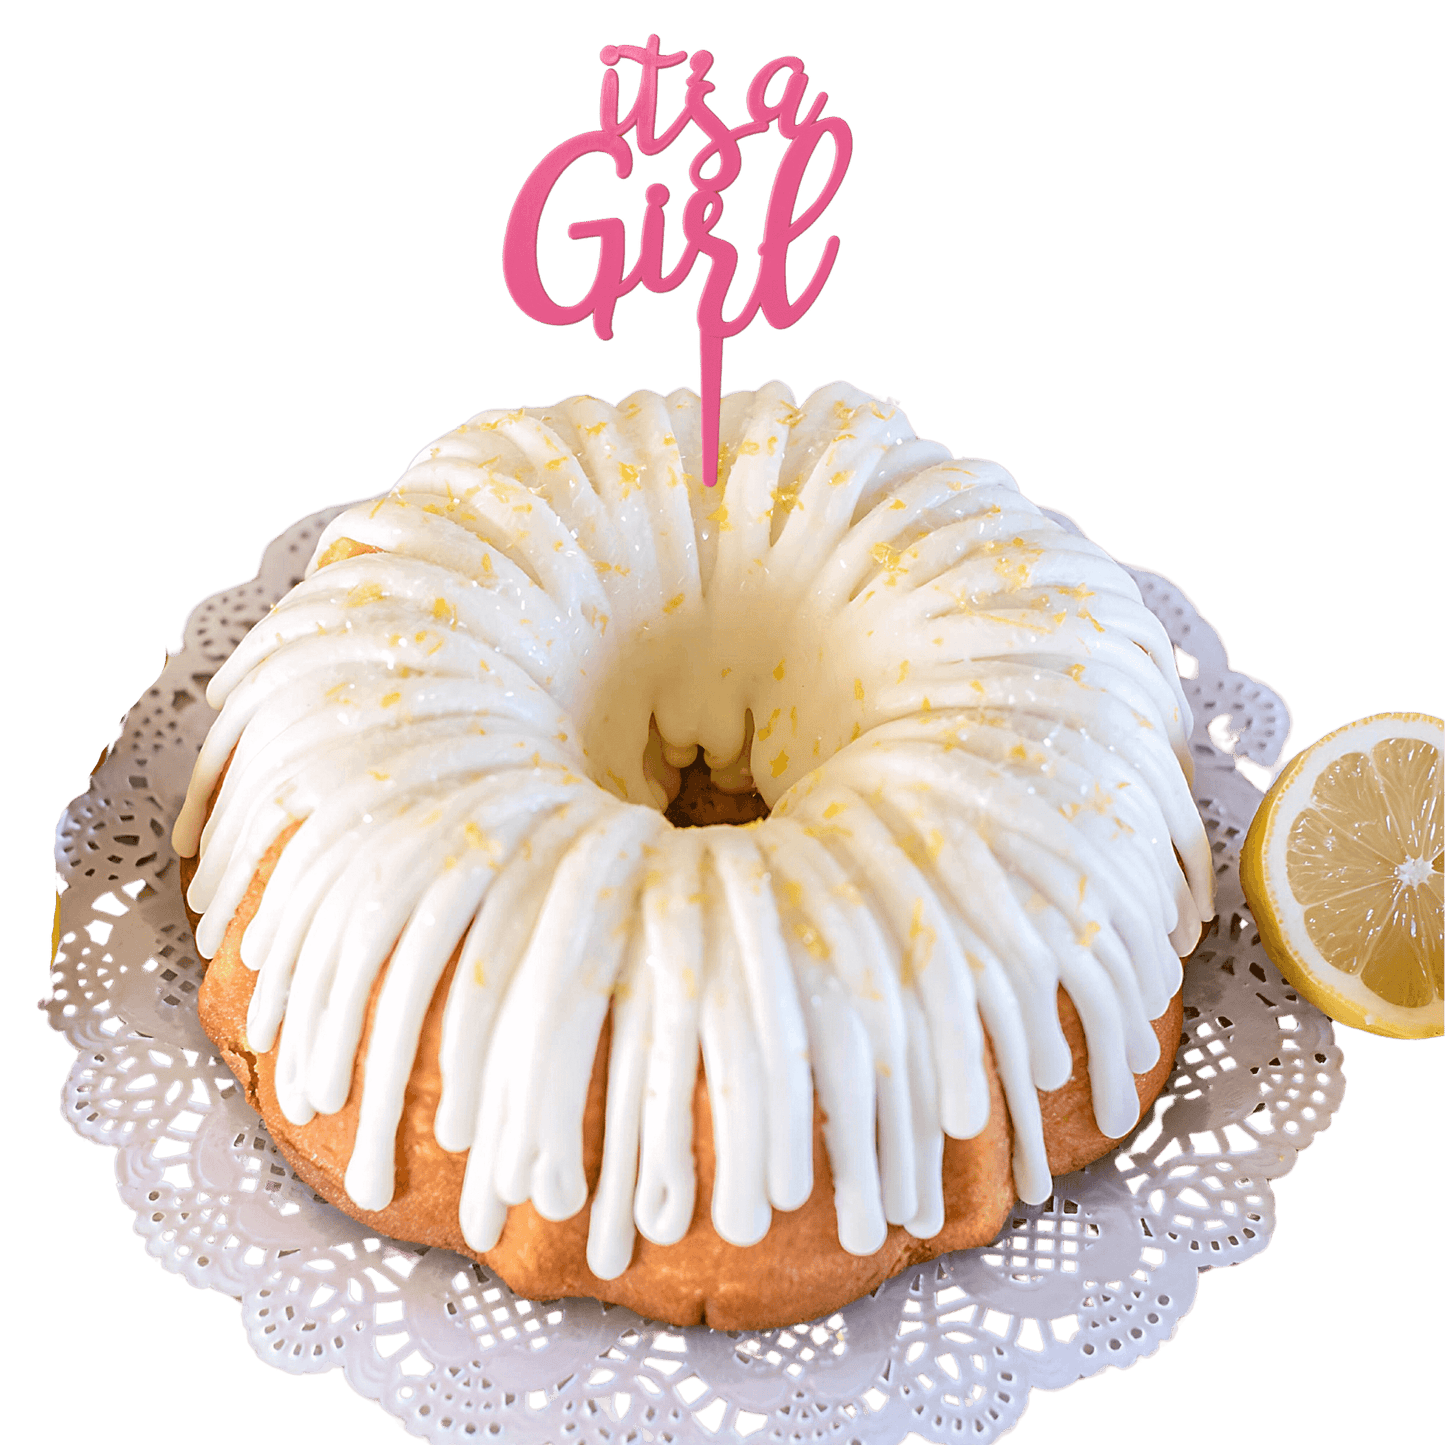 Lemon Squeeze "IT'S A GIRL" Bundt Cake - Bundt Cakes